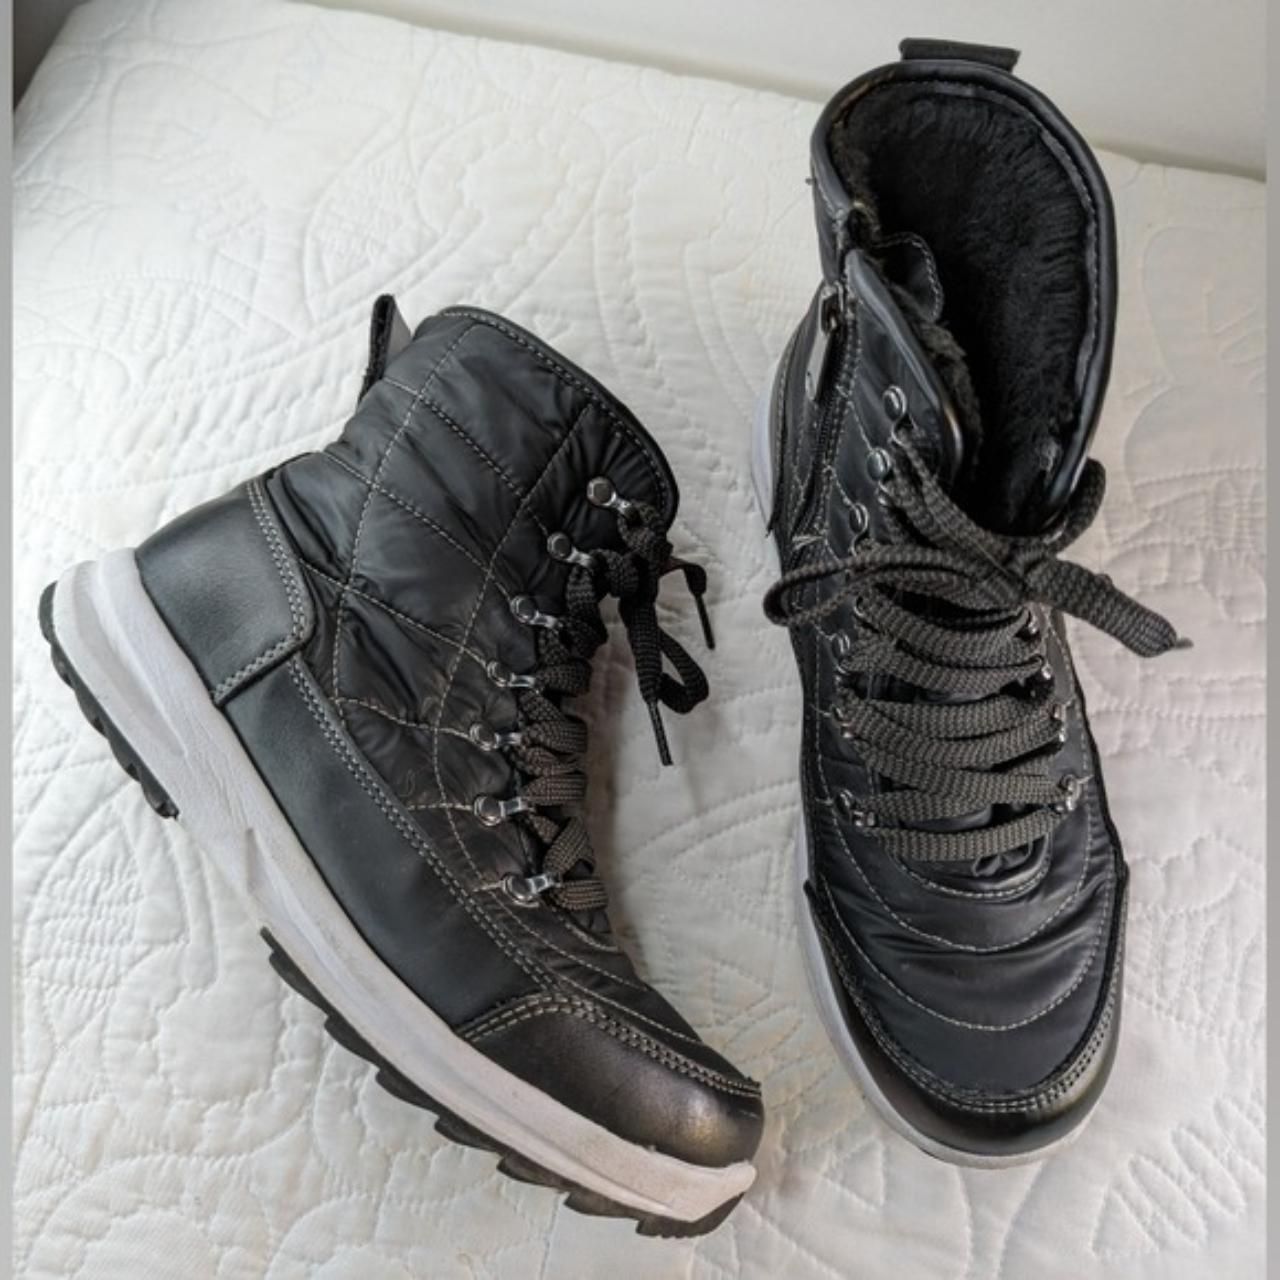 Weatherproof Women's Black Boots | Depop